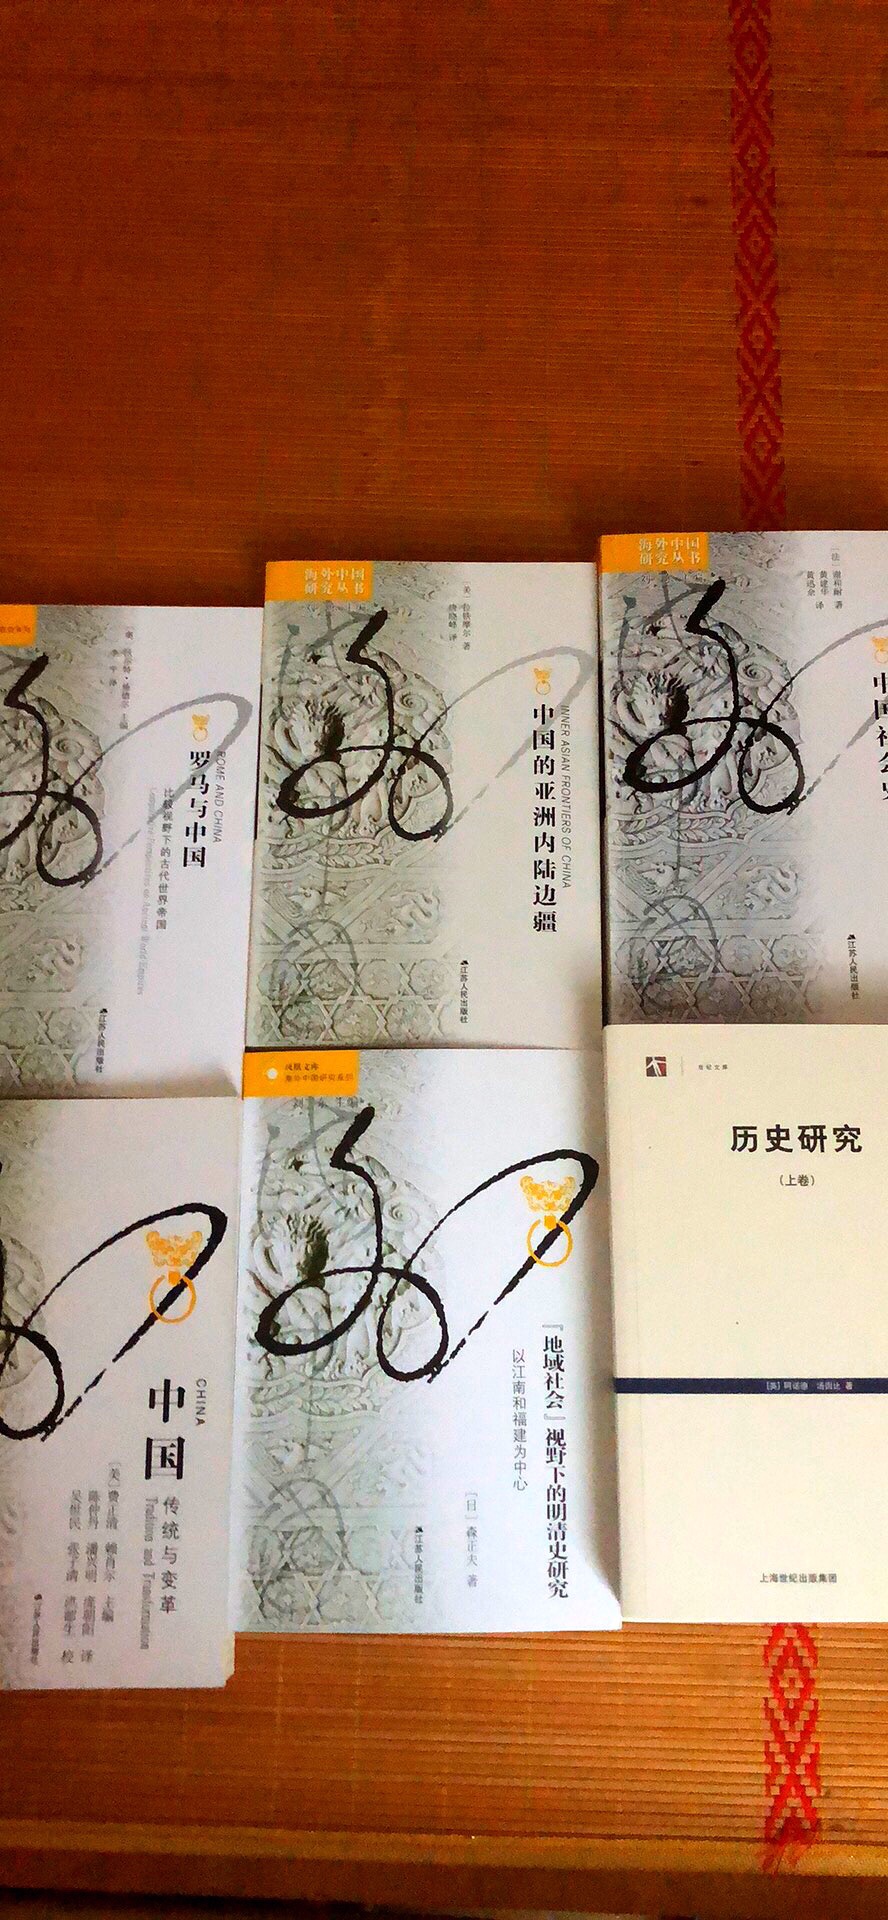 一直期待阅读的一套国外学者眼中的中国历史和人文，好书！活动价购买，性价比高！